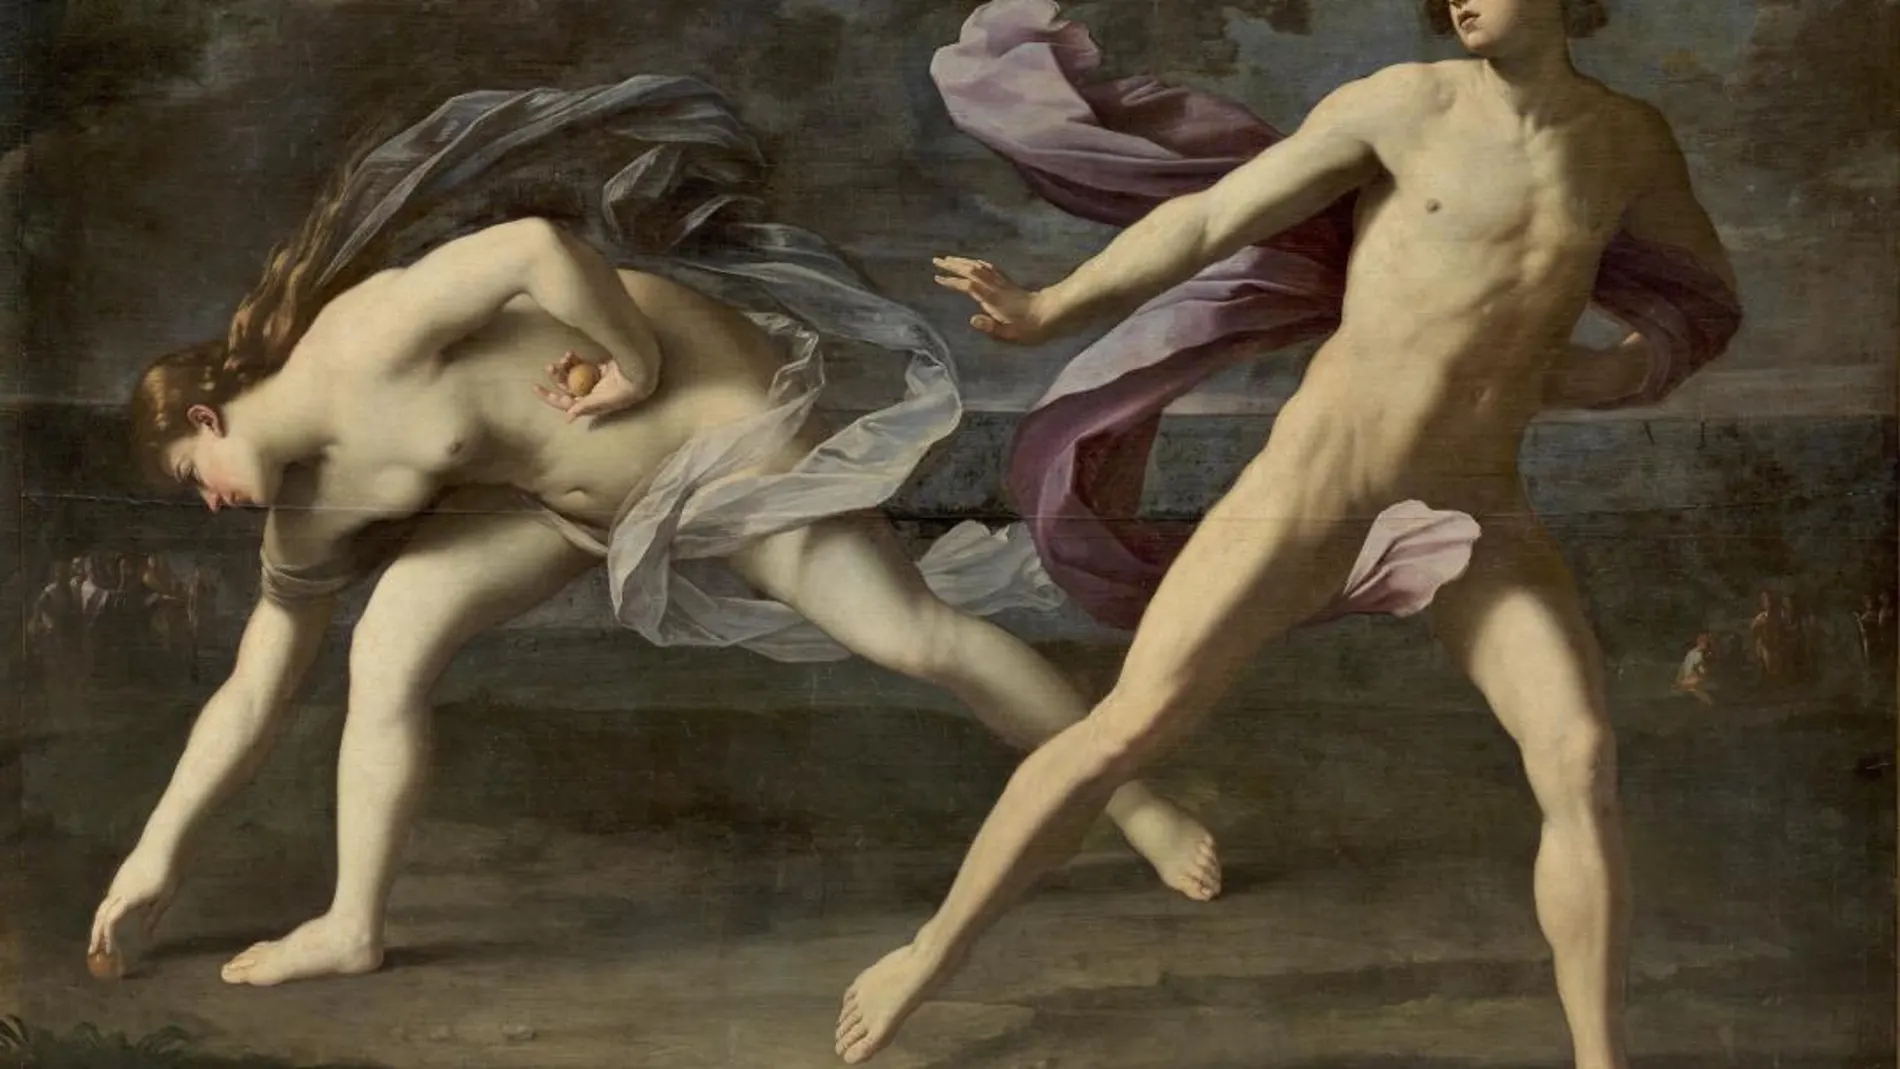 Atalanta cae en la trampa de Afrodita y se para a recoger una de las manzanas dispuestas por la diosa para permitir ganar la carrera a Hipómenes. Obra de Guido Reni en el Museo del Prado.